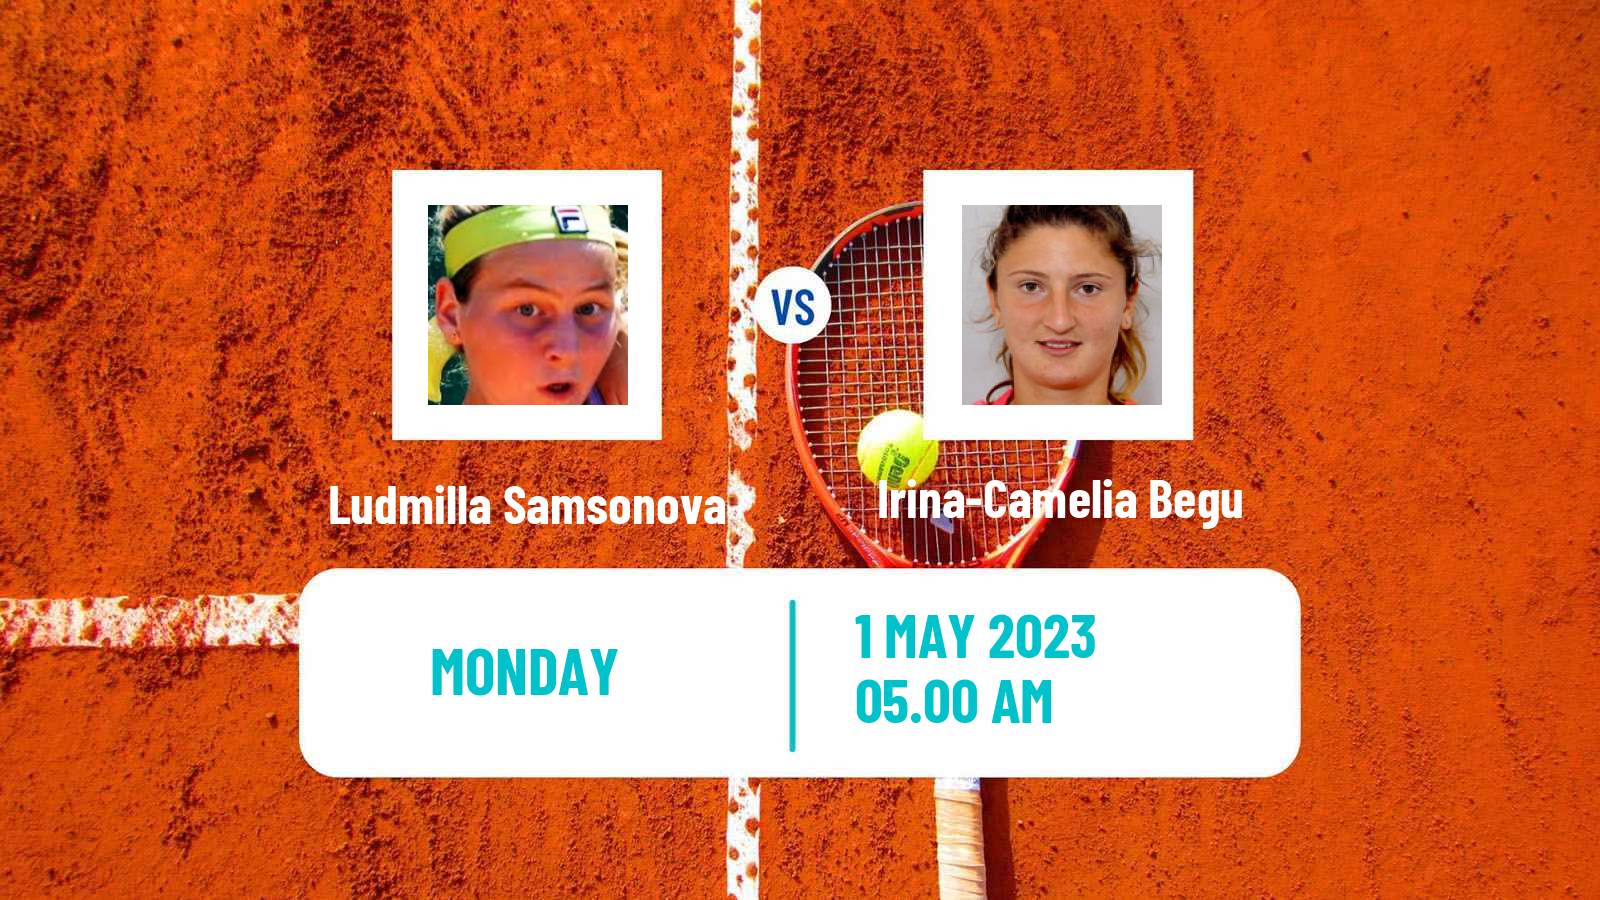 Tennis WTA Madrid Ludmilla Samsonova - Irina-Camelia Begu